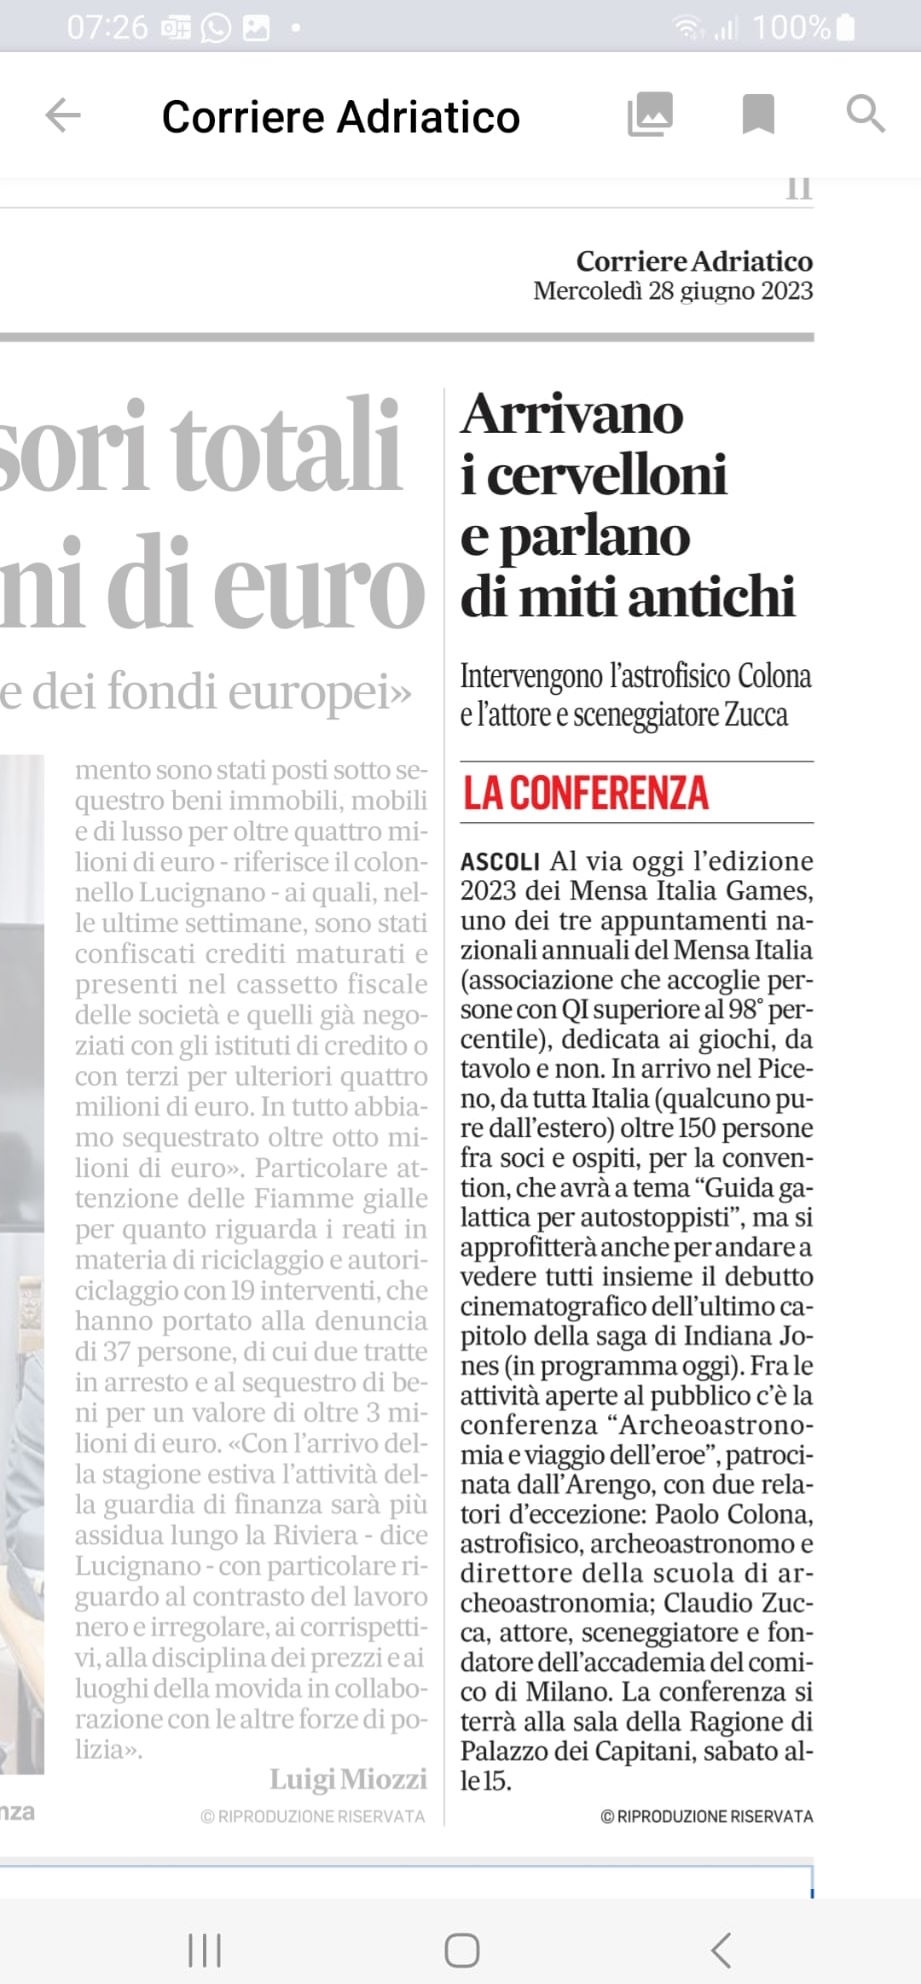 Articolo sul Corriere Adriatico